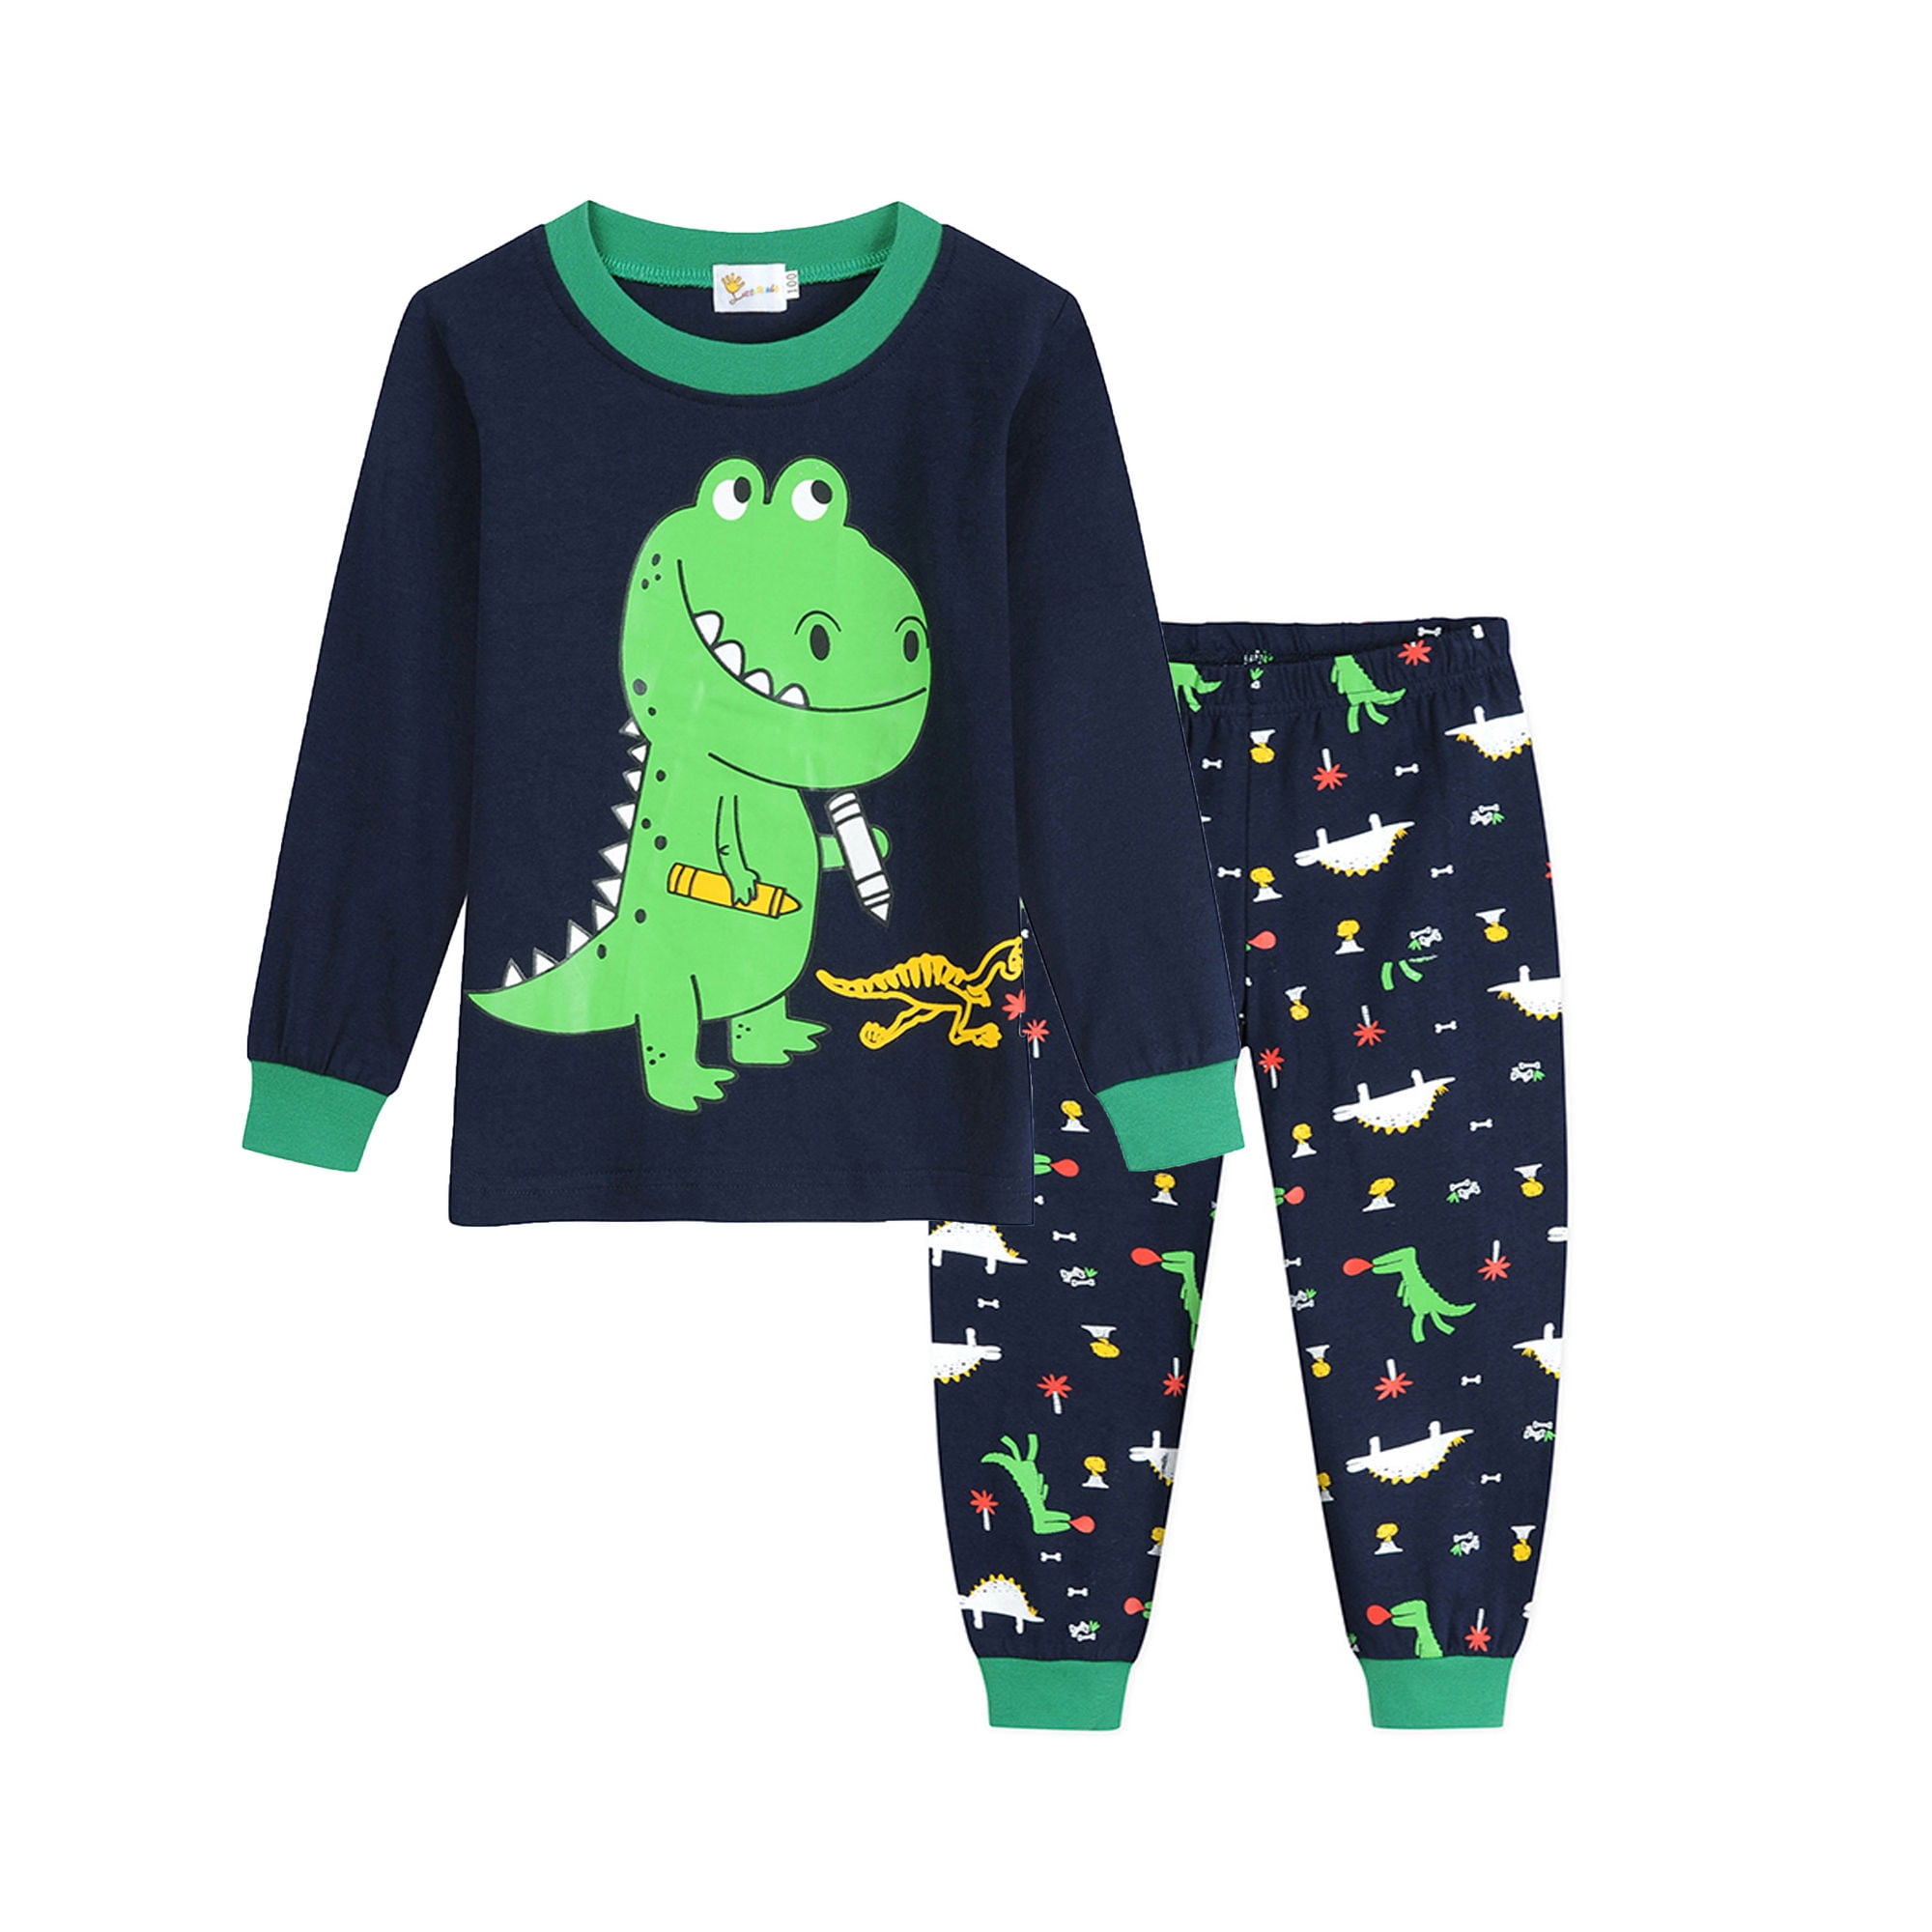 Boys Warm Pyjamas Sets Dinosaur Pyjamas Boys Pjs Long Sleeve Cotton Sleepwear Children Boys Clothes For Age 1-7 Years Kids Diggers Pyjamas For Boys Christmas Xmas Pj Children Pyjamas